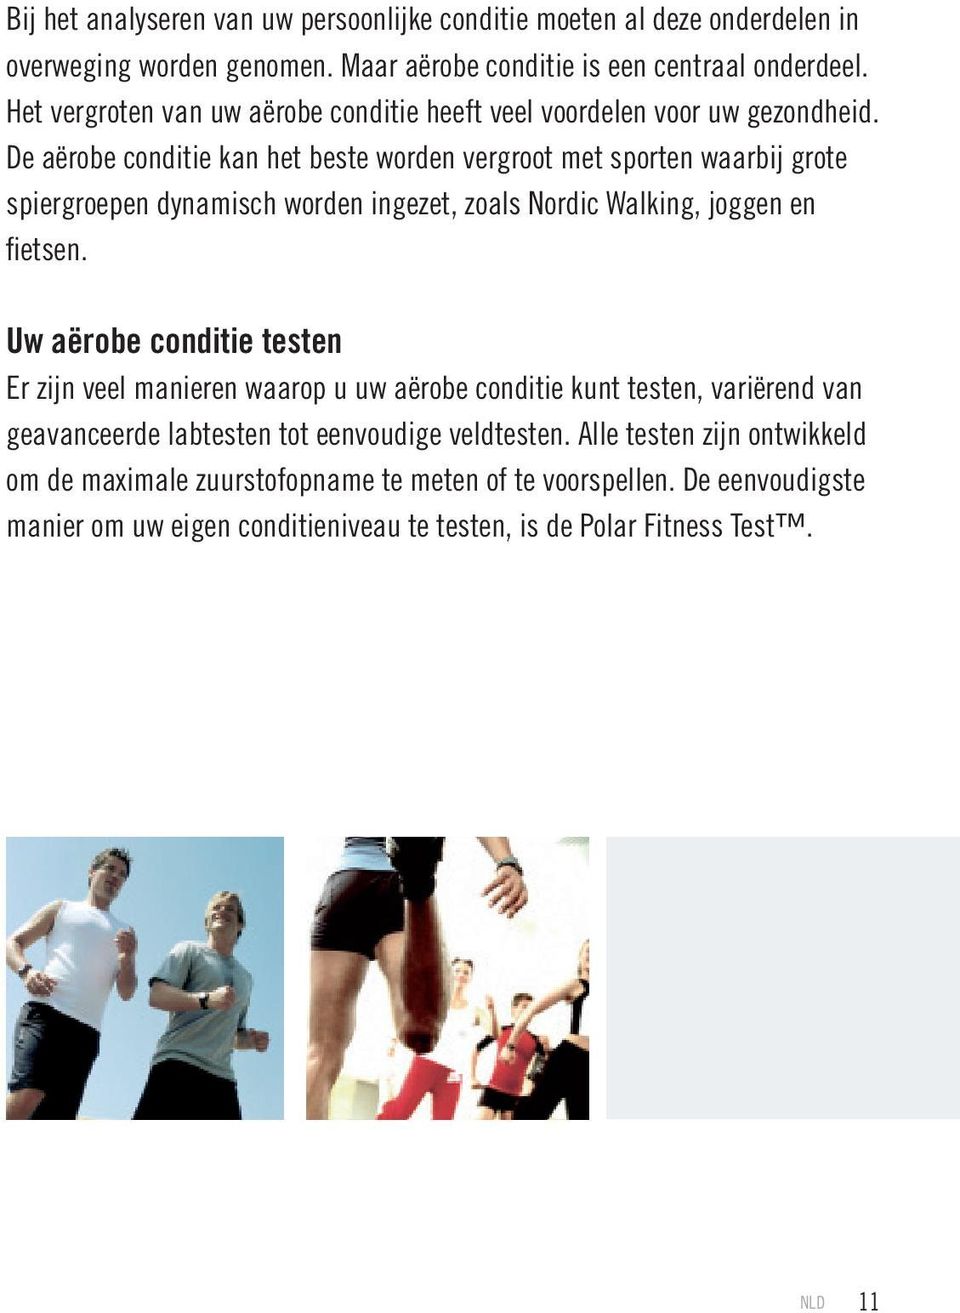 De aërobe conditie kan het beste worden vergroot met sporten waarbij grote spiergroepen dynamisch worden ingezet, zoals Nordic Walking, joggen en fietsen.